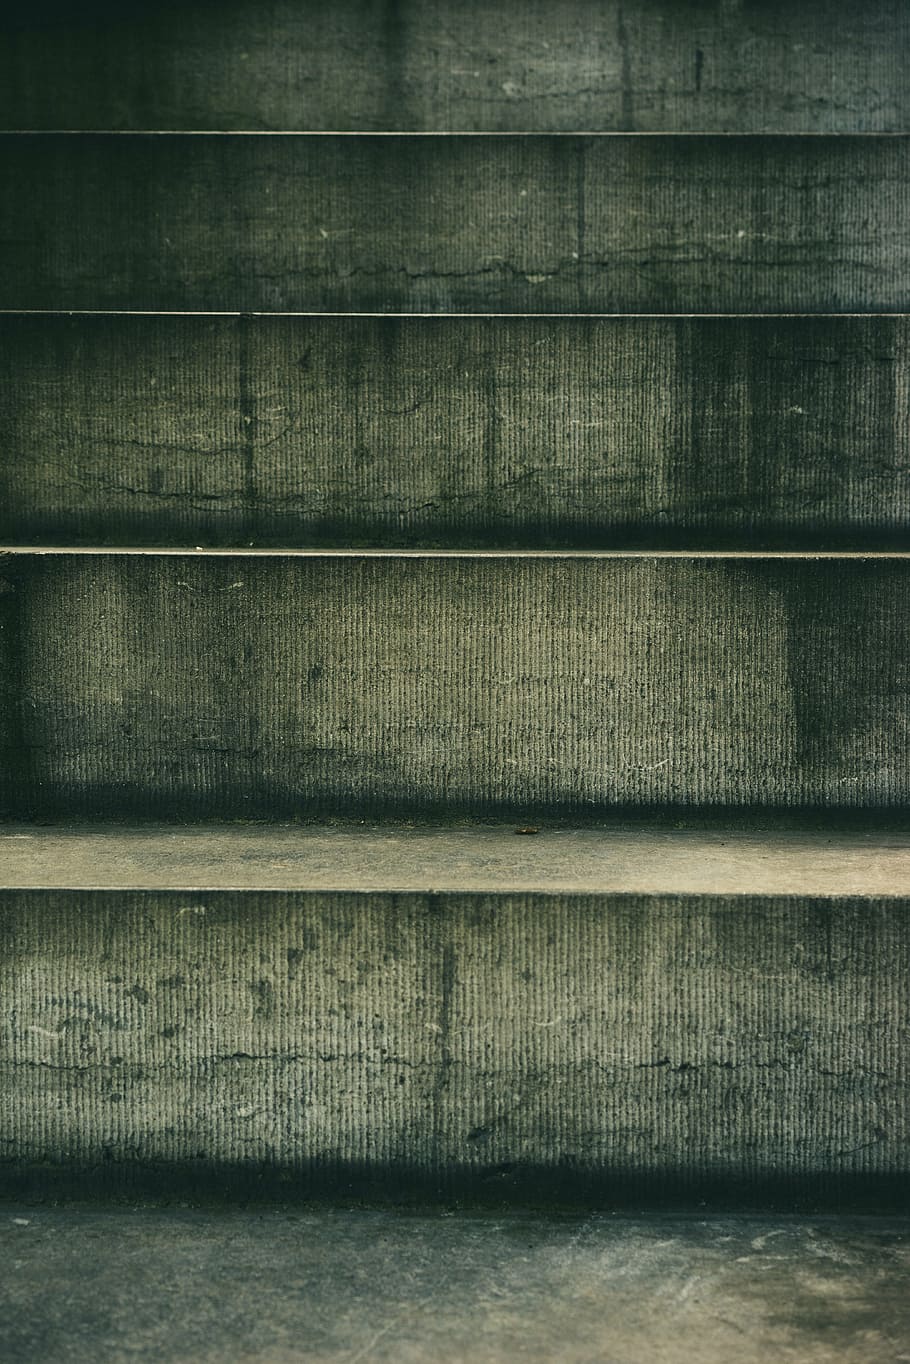 gris, hormigón, escaleras, despejado, escalera, textura, exterior, fondos, resumen, sin gente